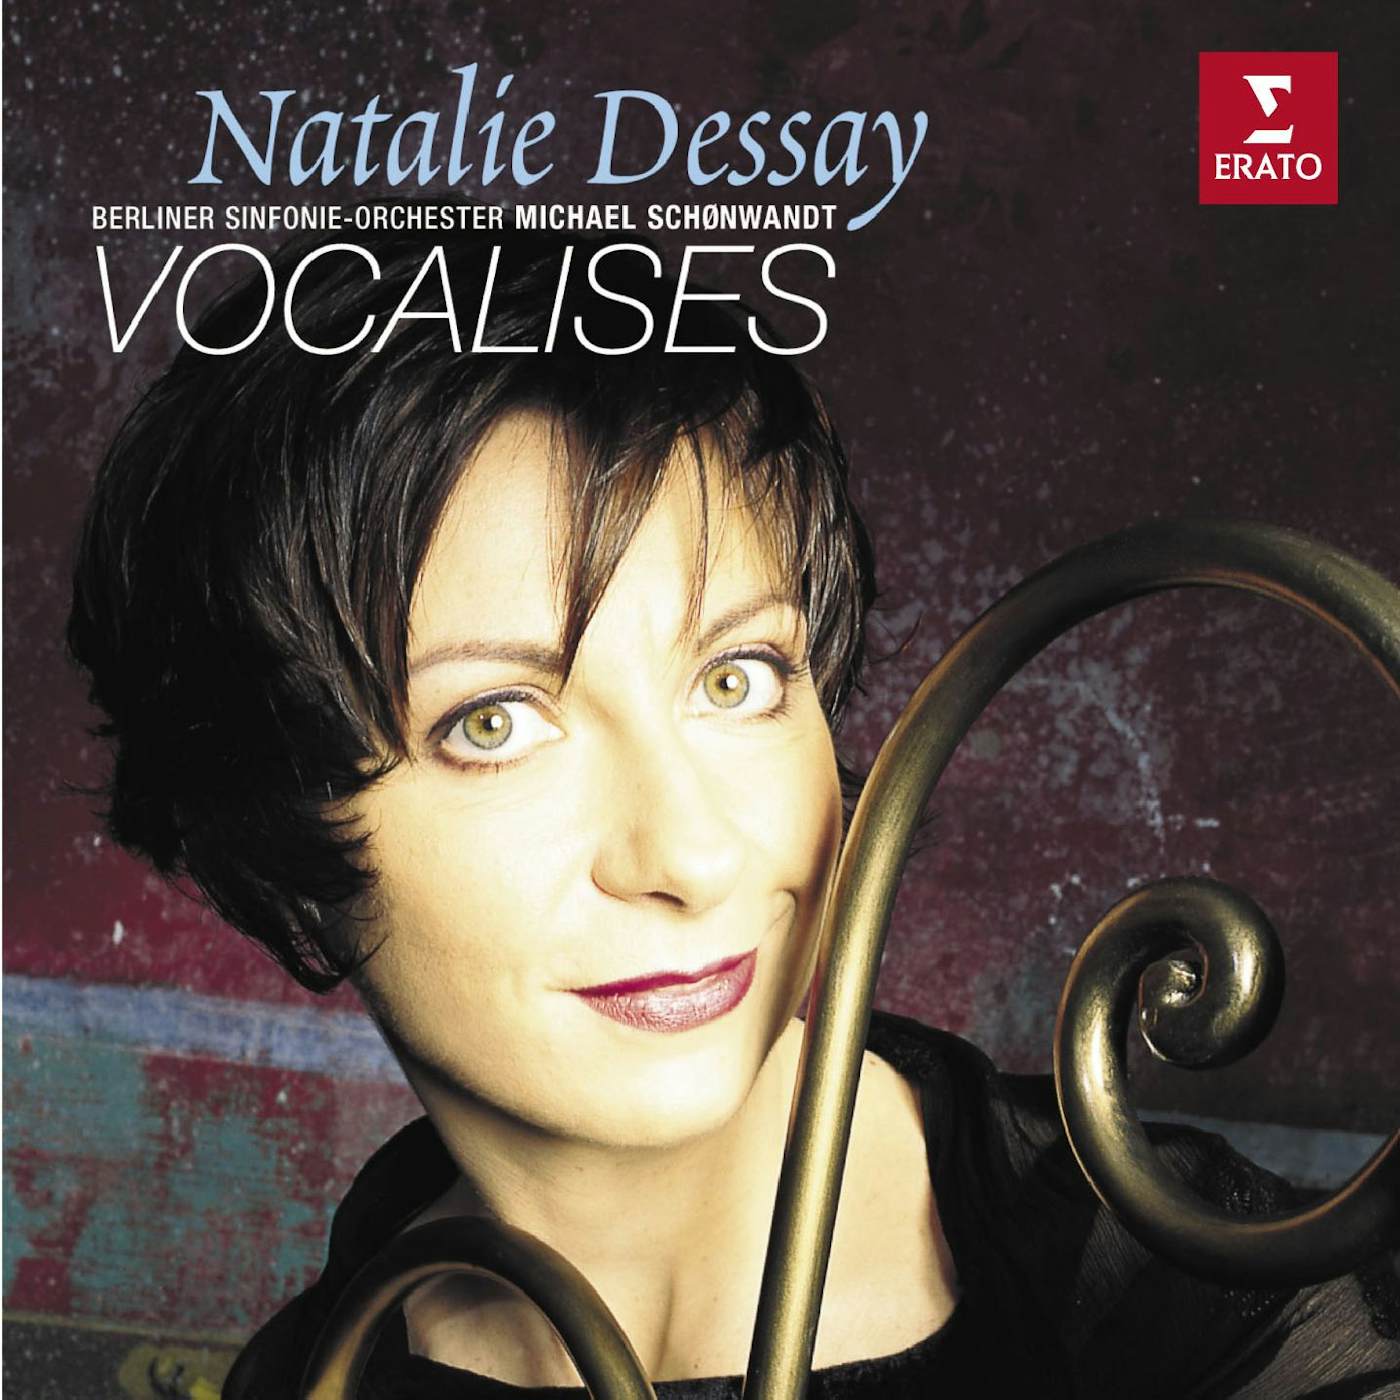 Natalie Dessay VOCALISES CD